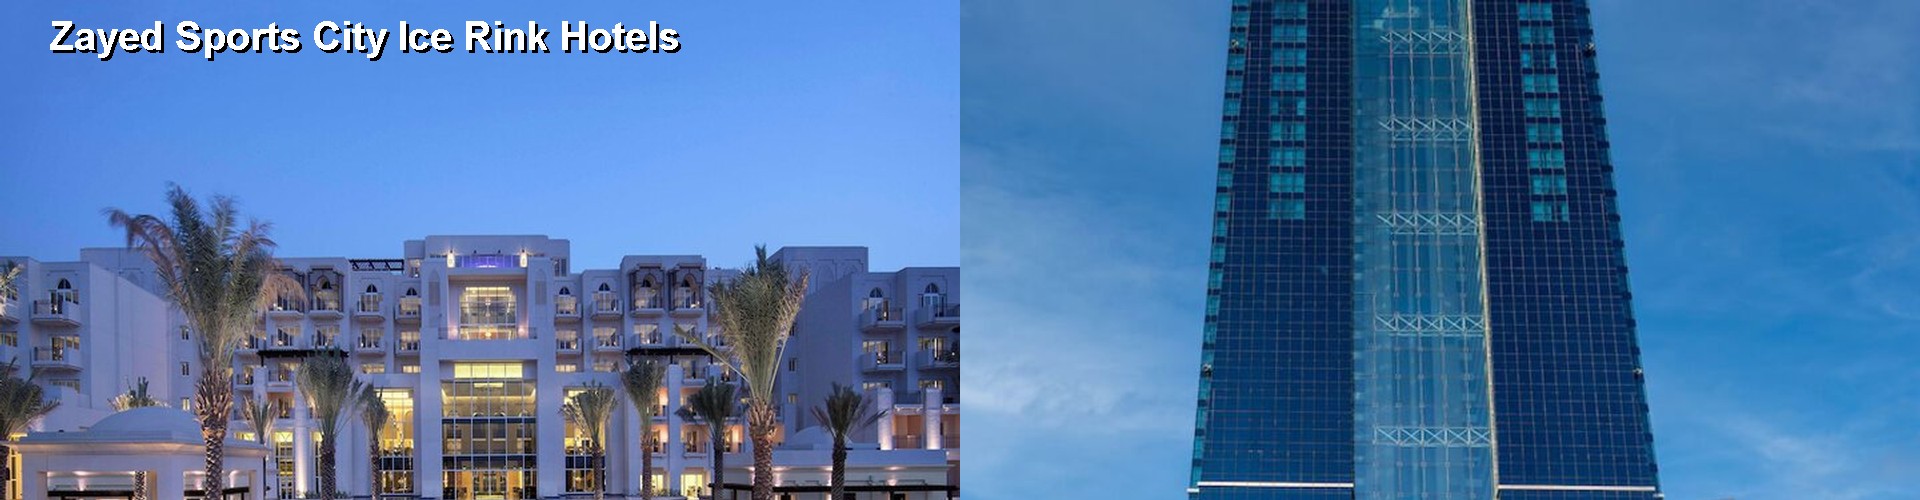 5 Best Hotels near Zayed Sports City Ice Rink